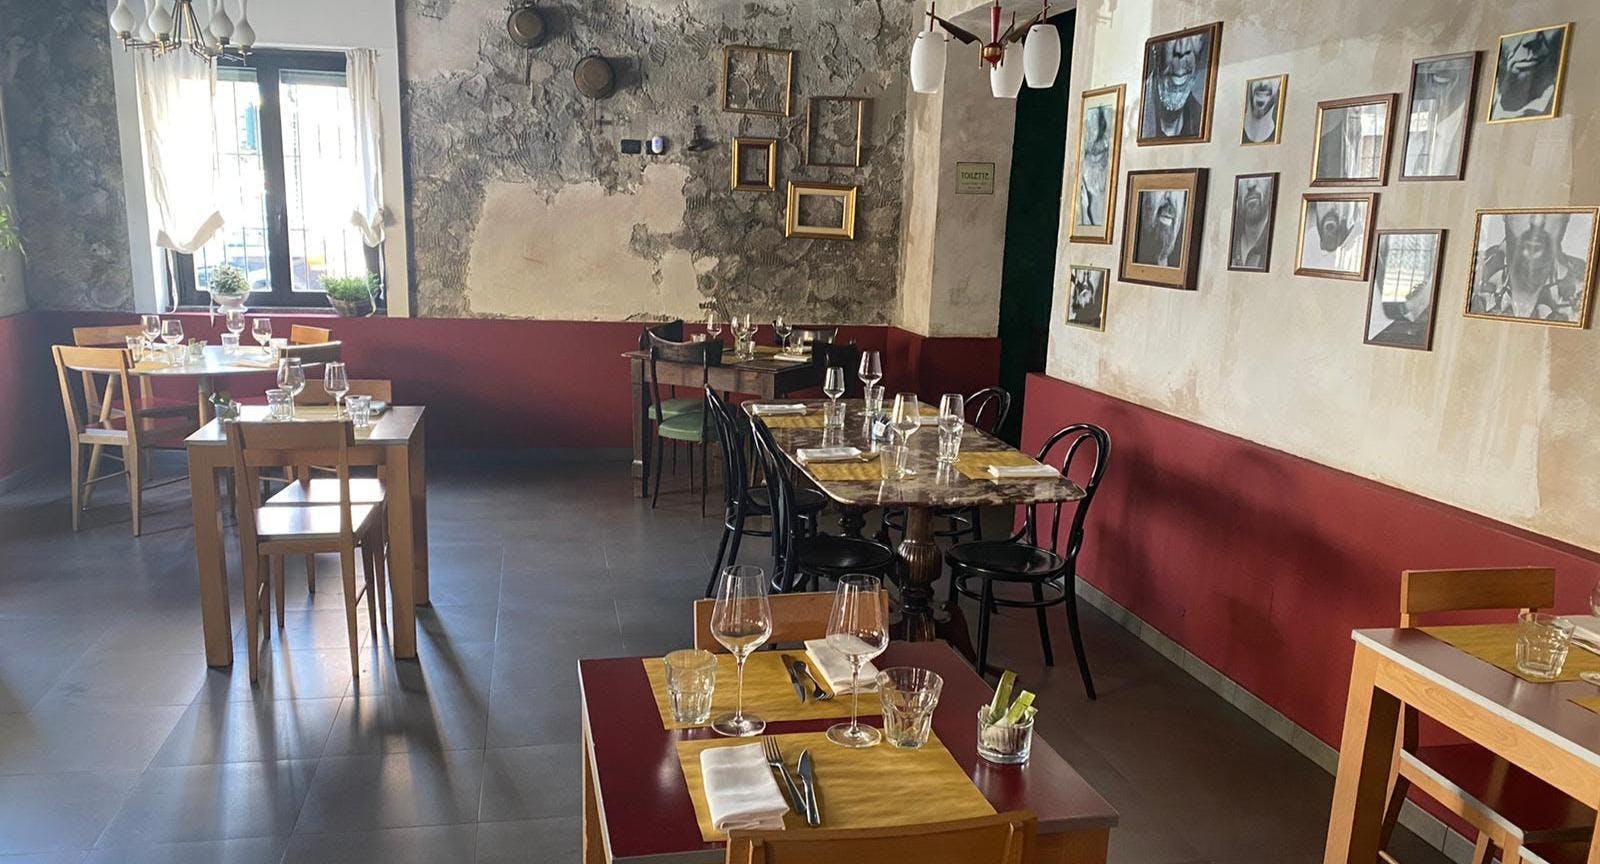 Photo of restaurant Trattoria del Barbisa in Seregno, Monza and Brianza